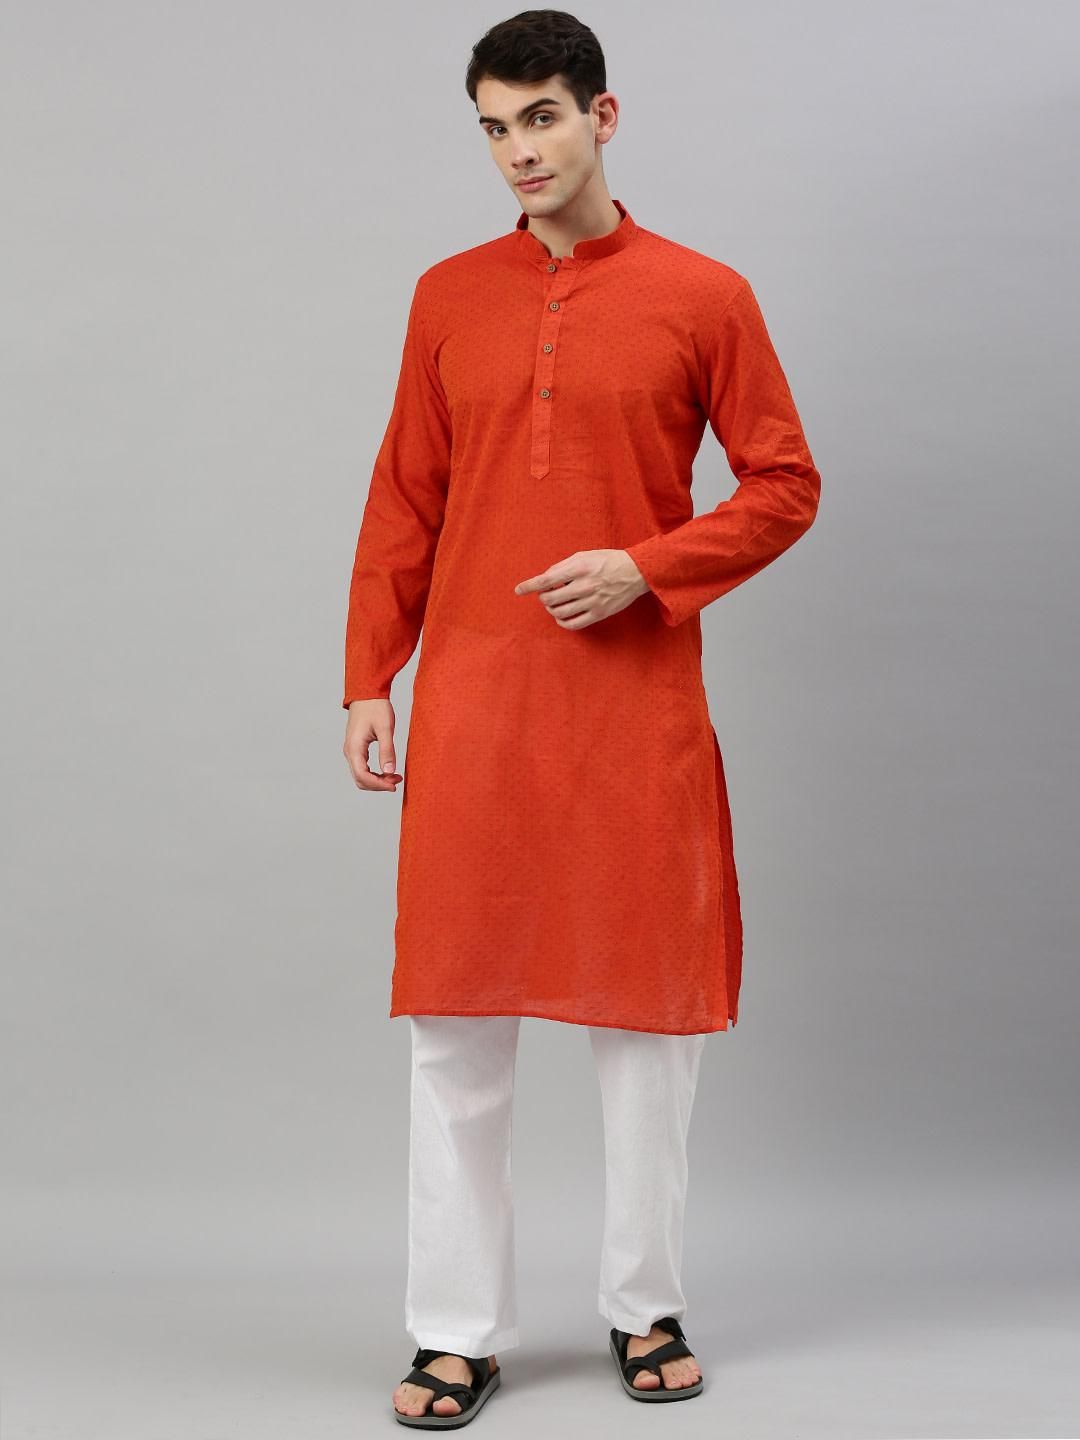 Orange Slim Fit Woven Design Handloom Dobby Cotton Kurta for Men Online ...